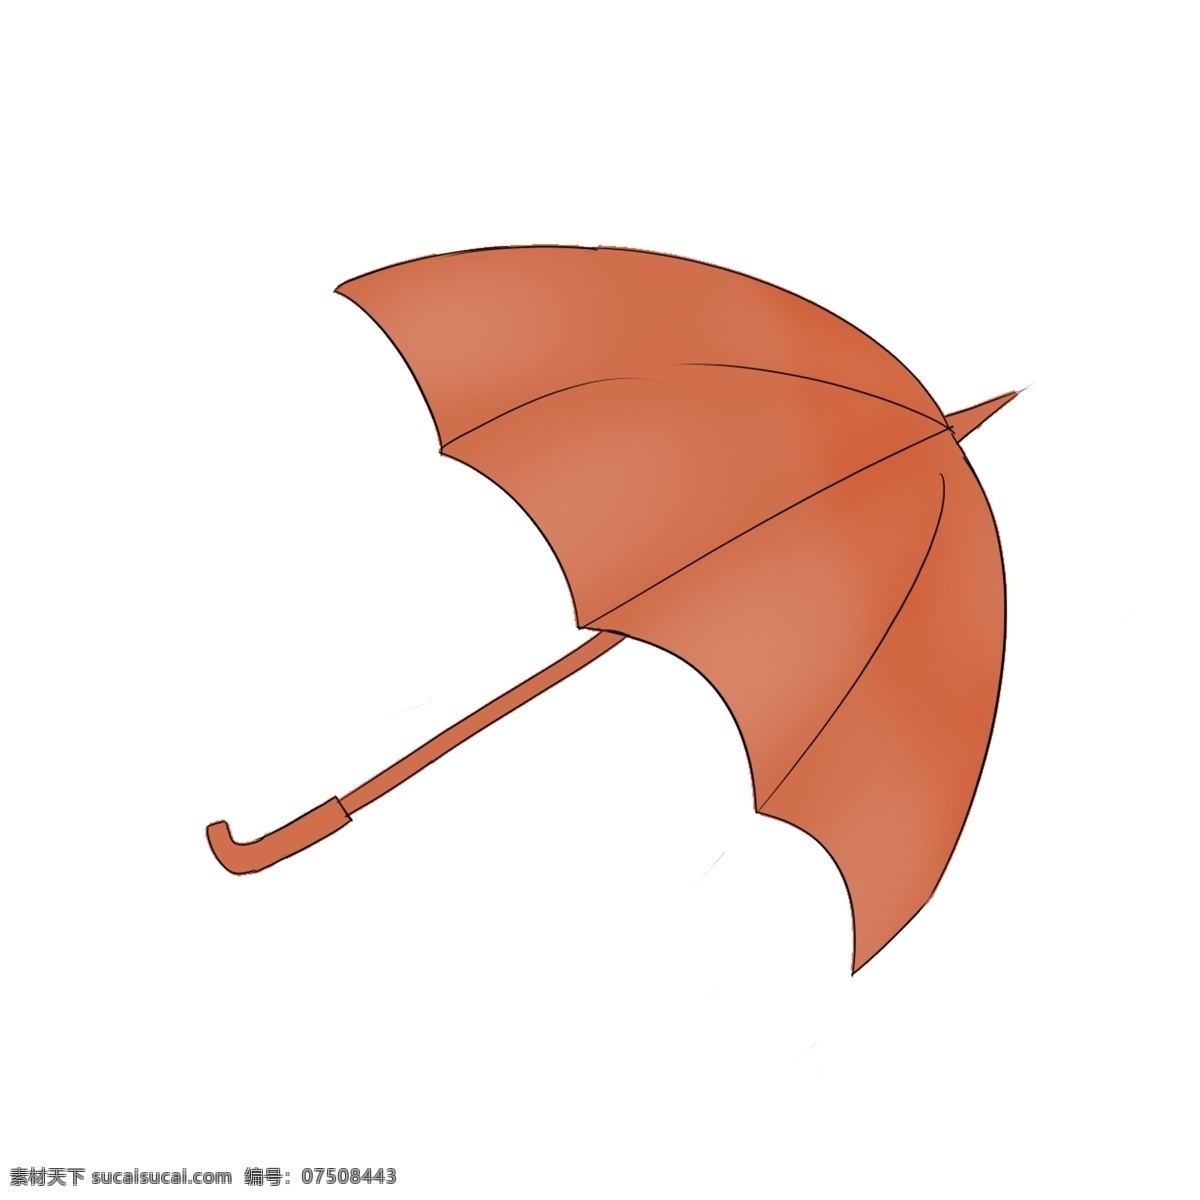 橘黄色 小 雨伞 图案 线条 插画 绘画素材 创意 简约 小清新 水彩 装饰图案 文艺 可爱 卡通